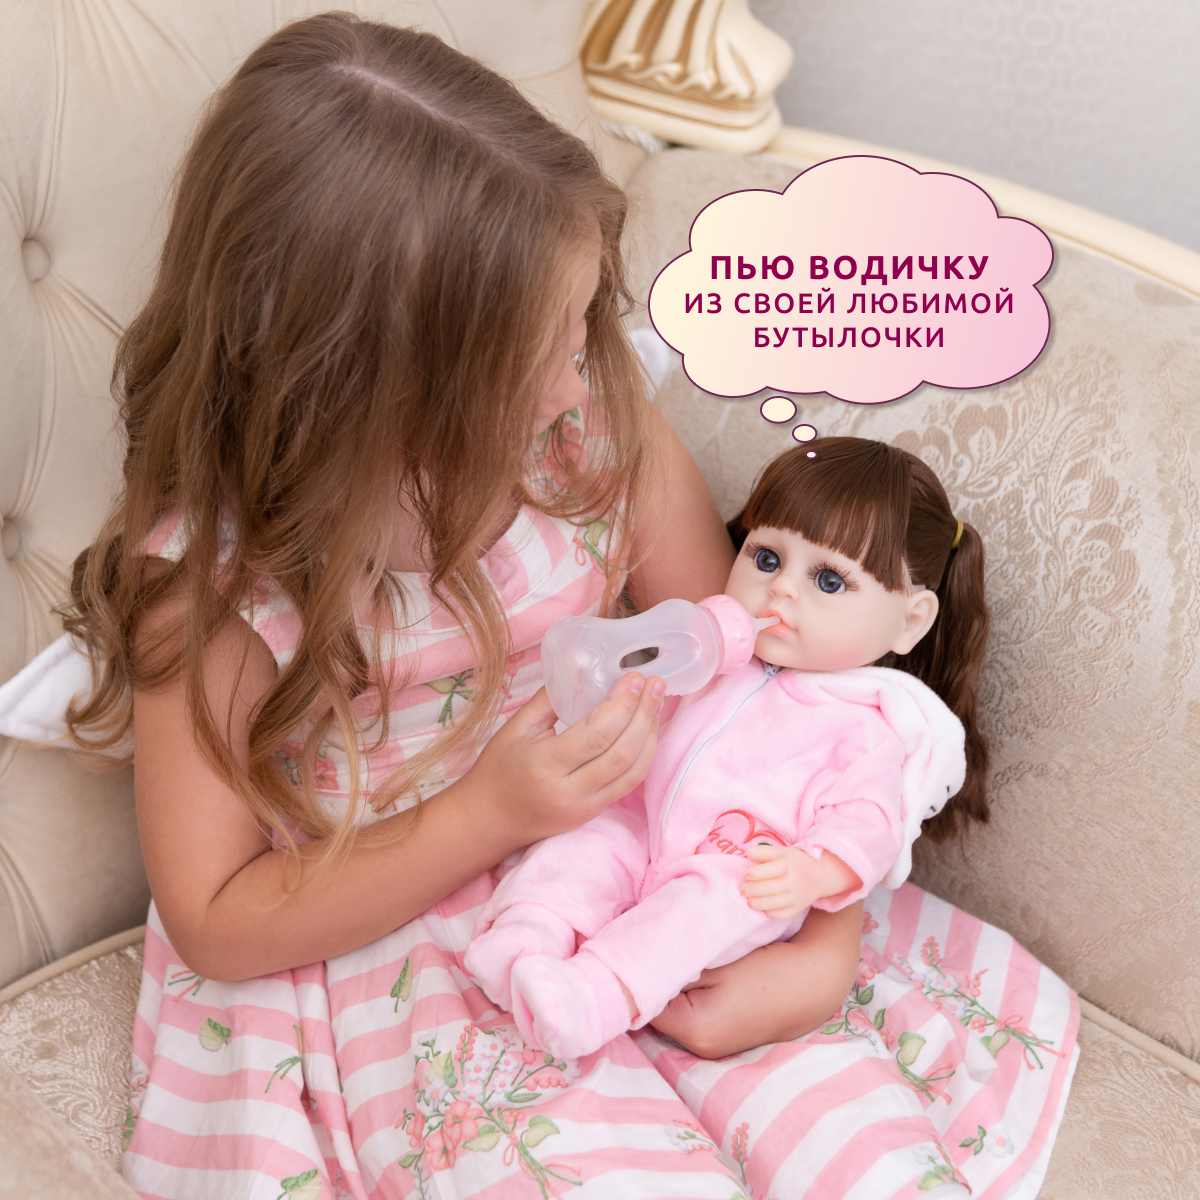 Кукла Реборн QA BABY Альбина девочка интерактивная Пупс набор игрушки для ванной для девочки 38 см 3805 - фото 7